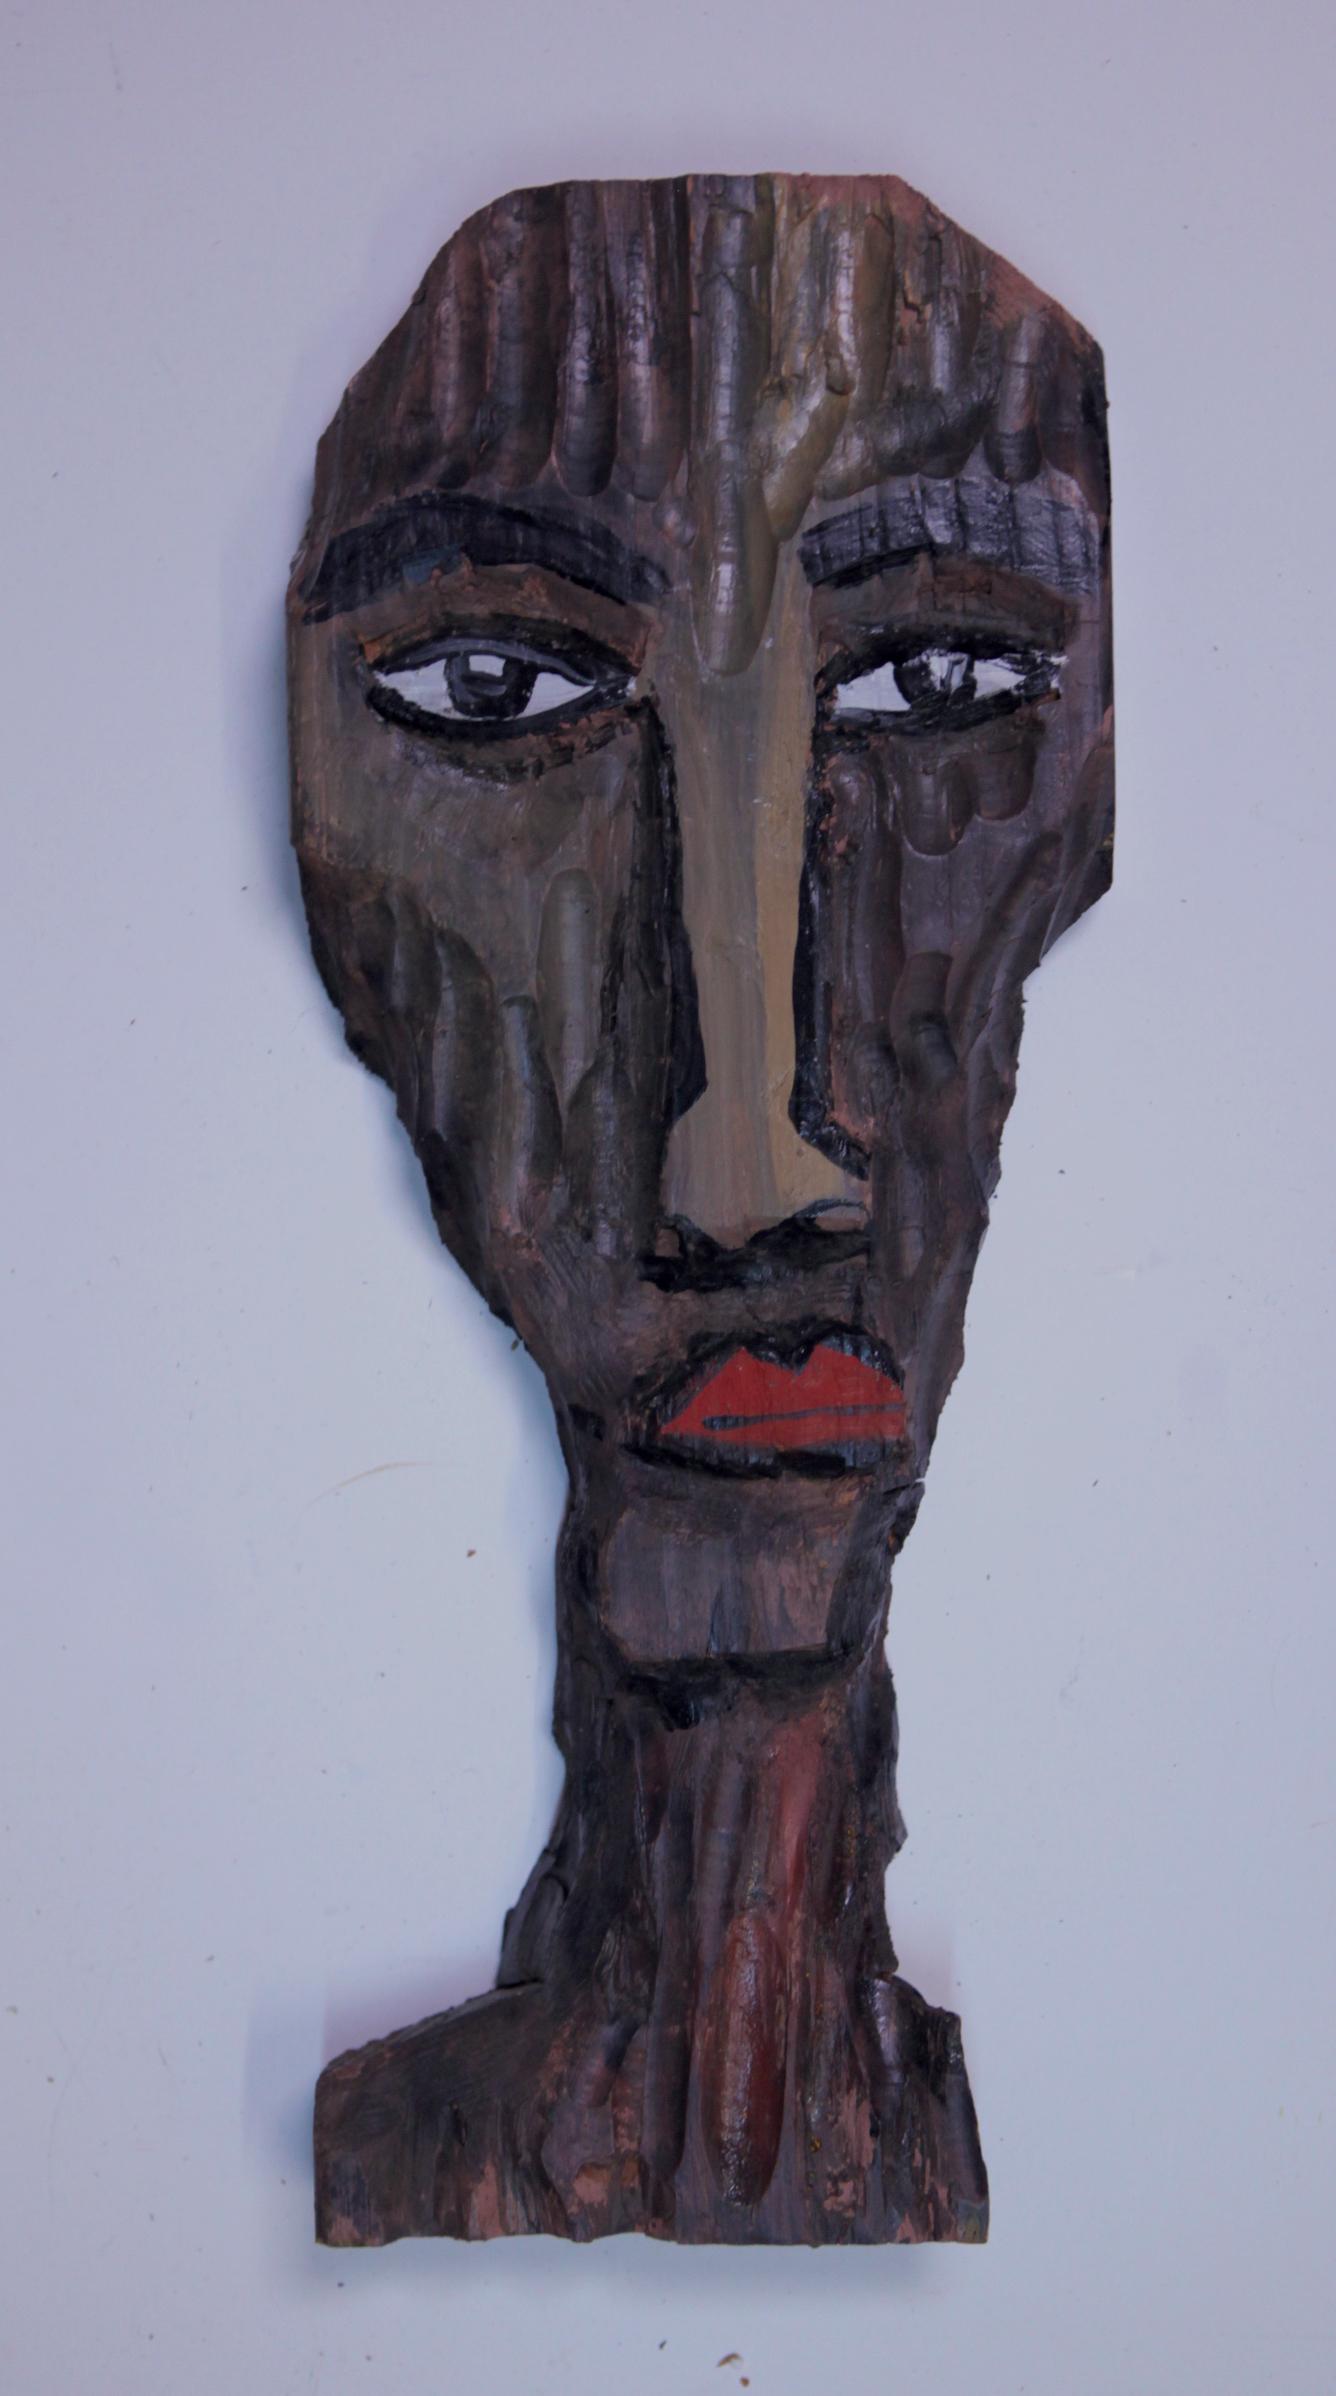 Craig Coleman Figurative Sculpture - “Head”